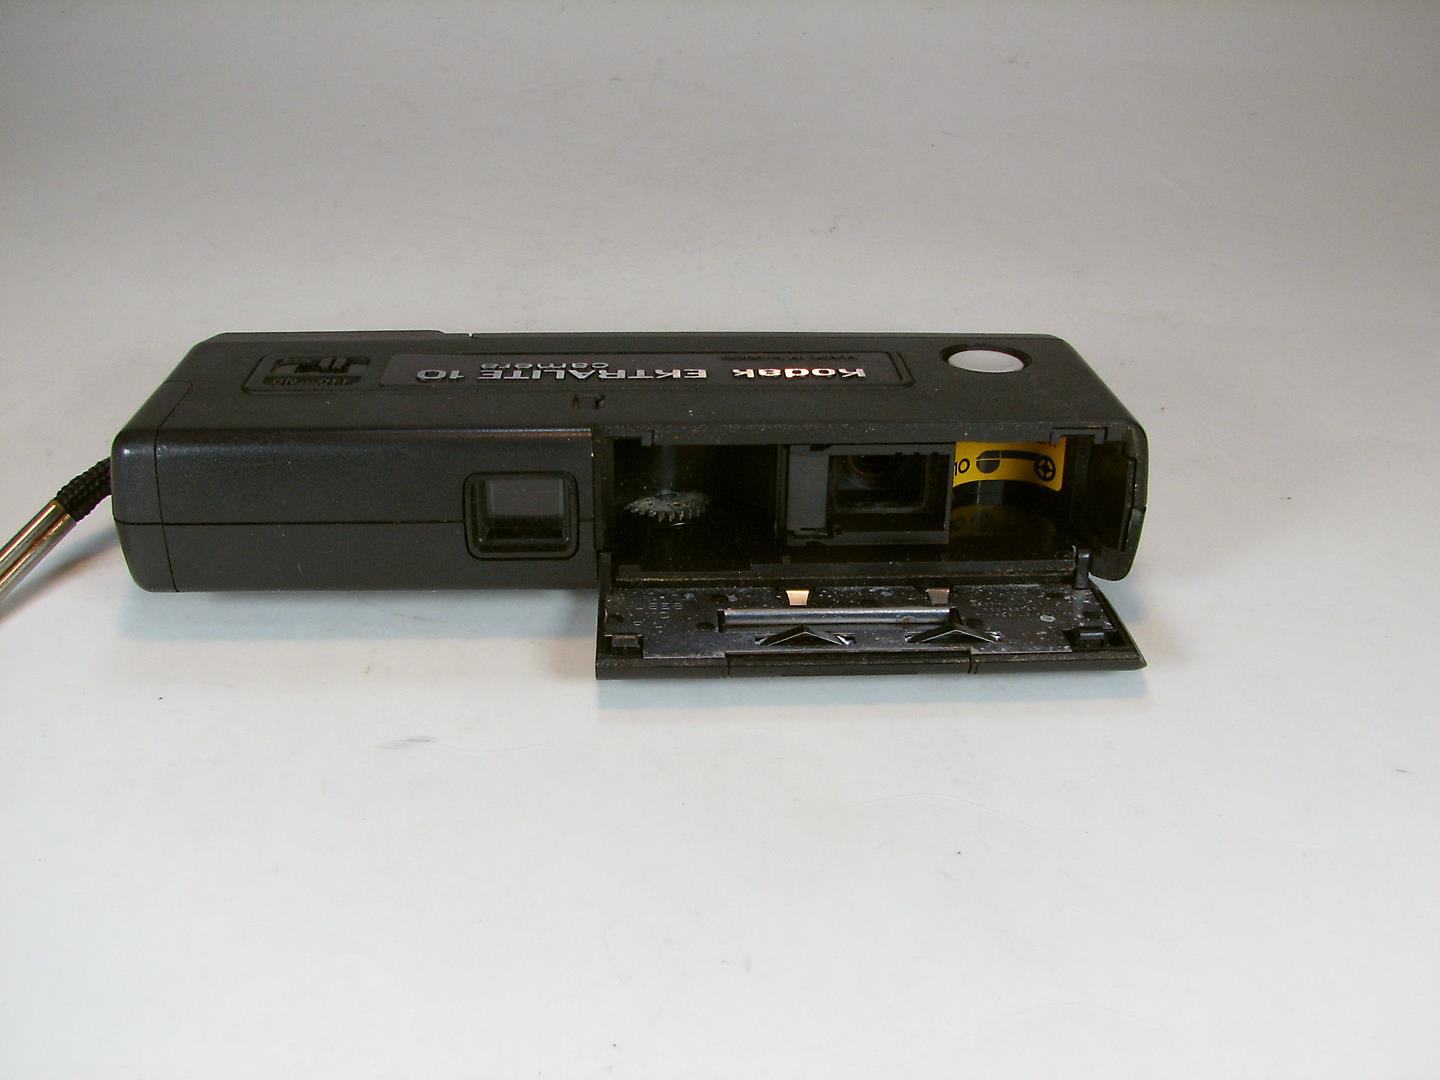 دوربین Kodak Ektralite 10 همراه با کارتن